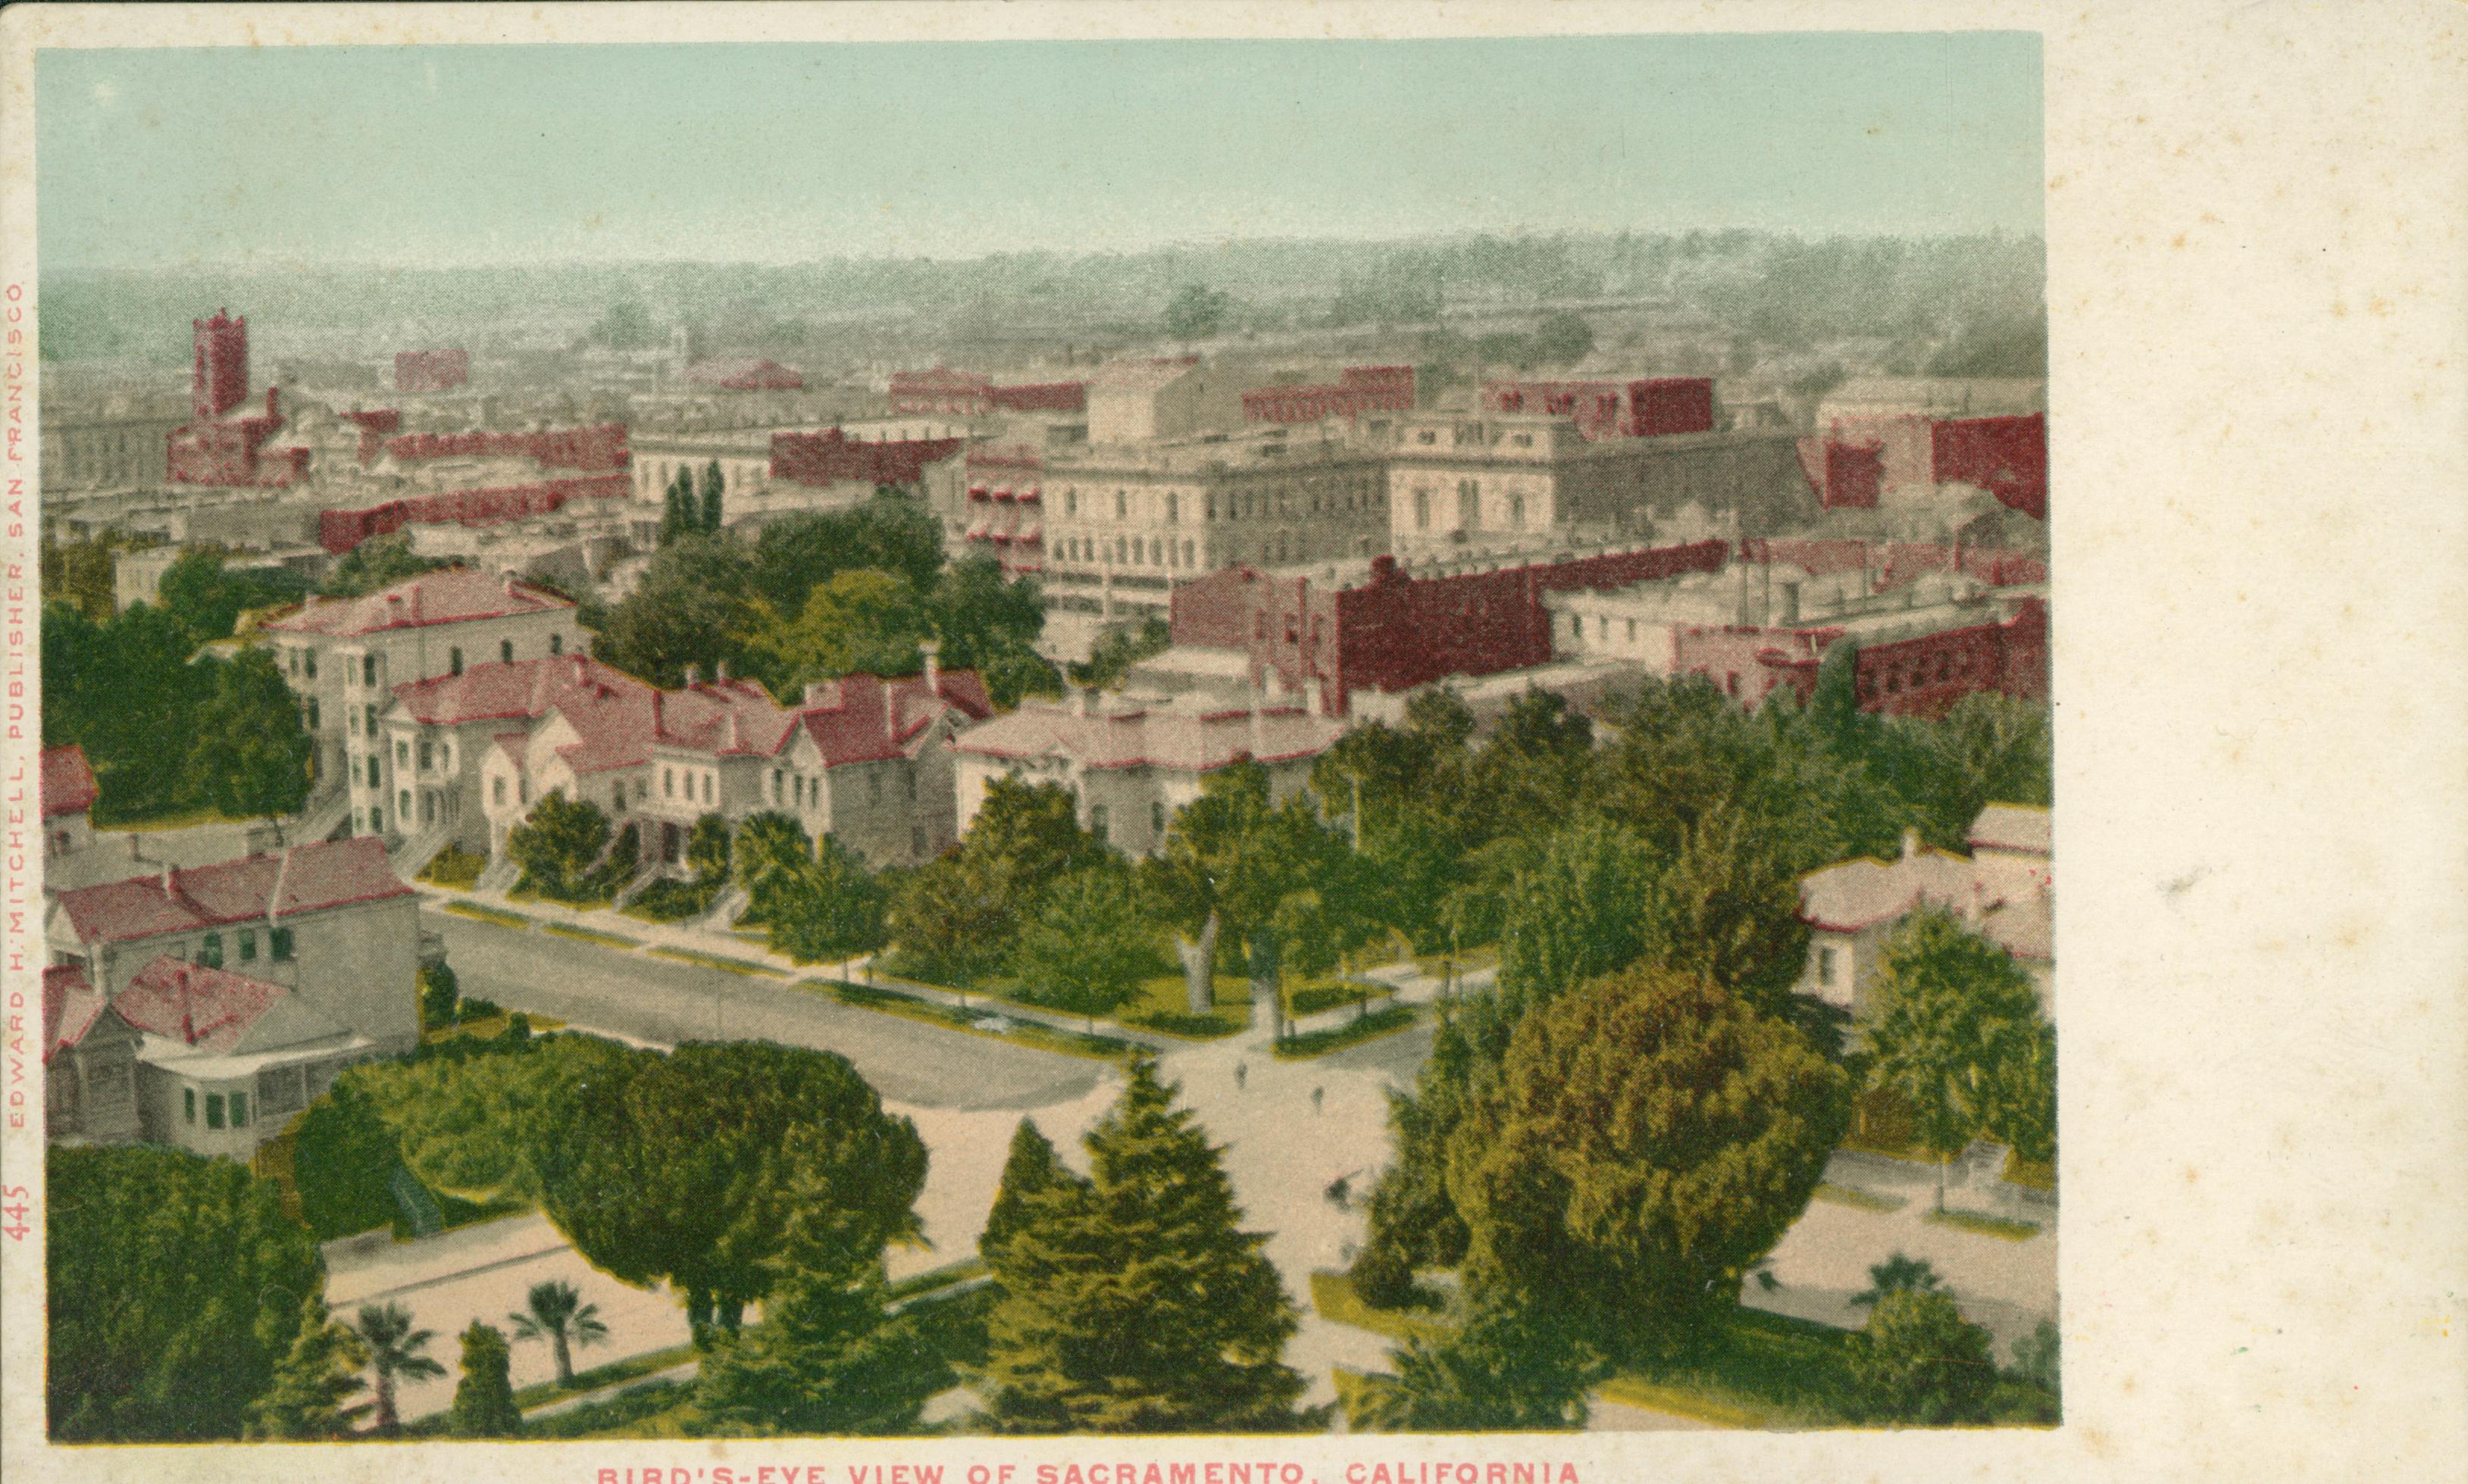 This postcard shows a bird's eye view of Sacramento.